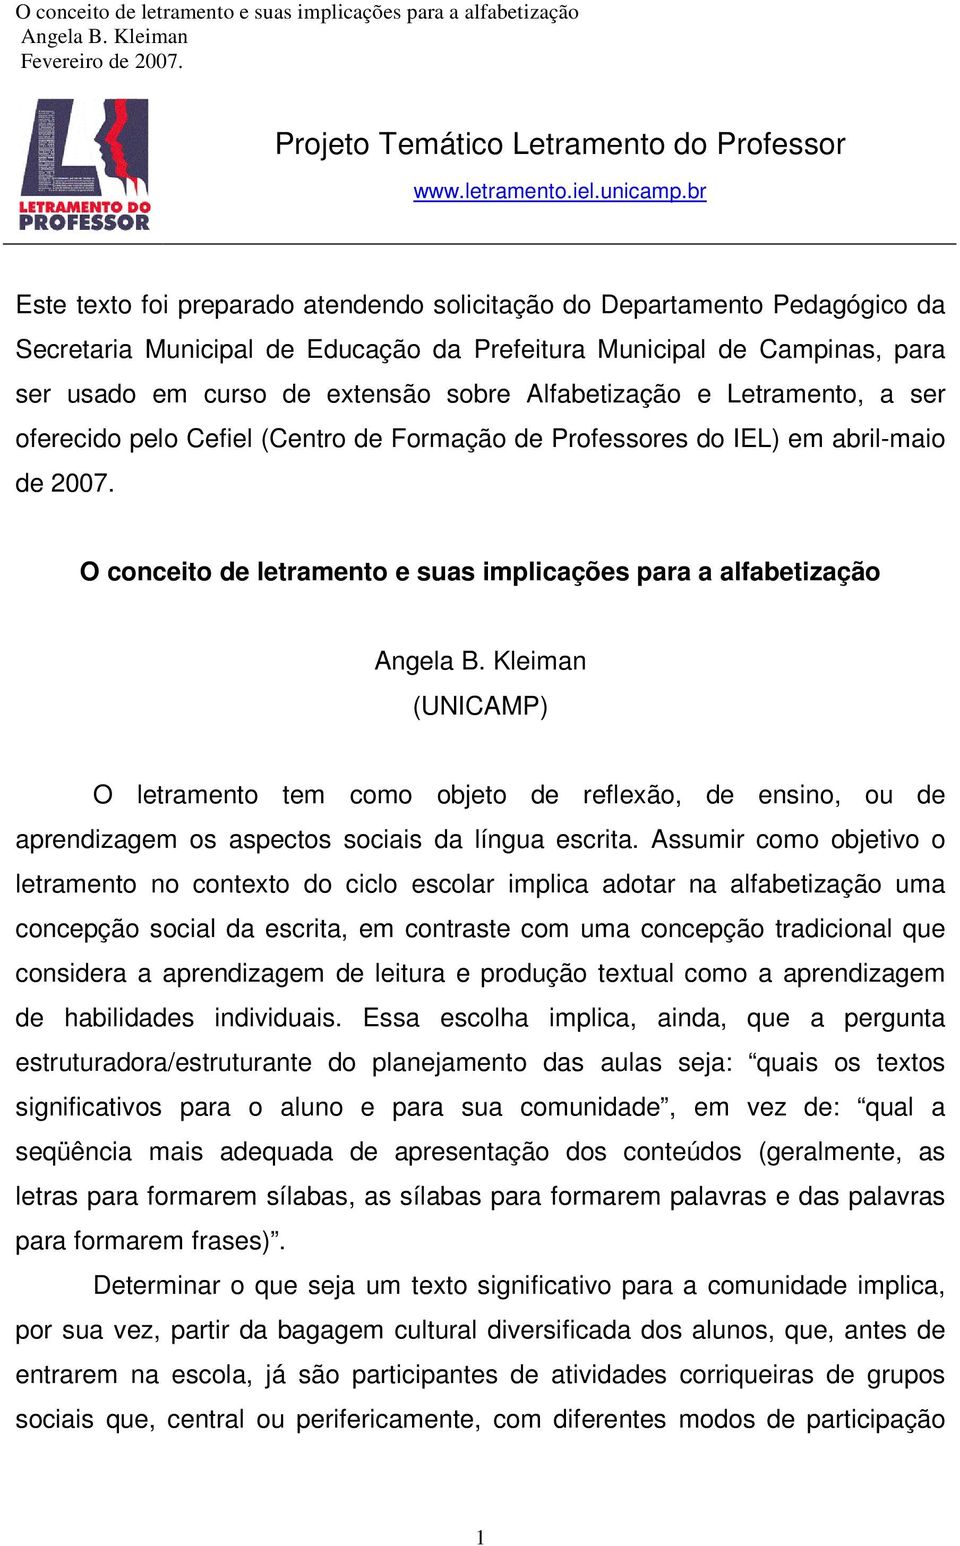 Alfabetização e Letramento, a ser oferecido pelo Cefiel (Centro de Formação de Professores do IEL) em abril-maio de 2007.